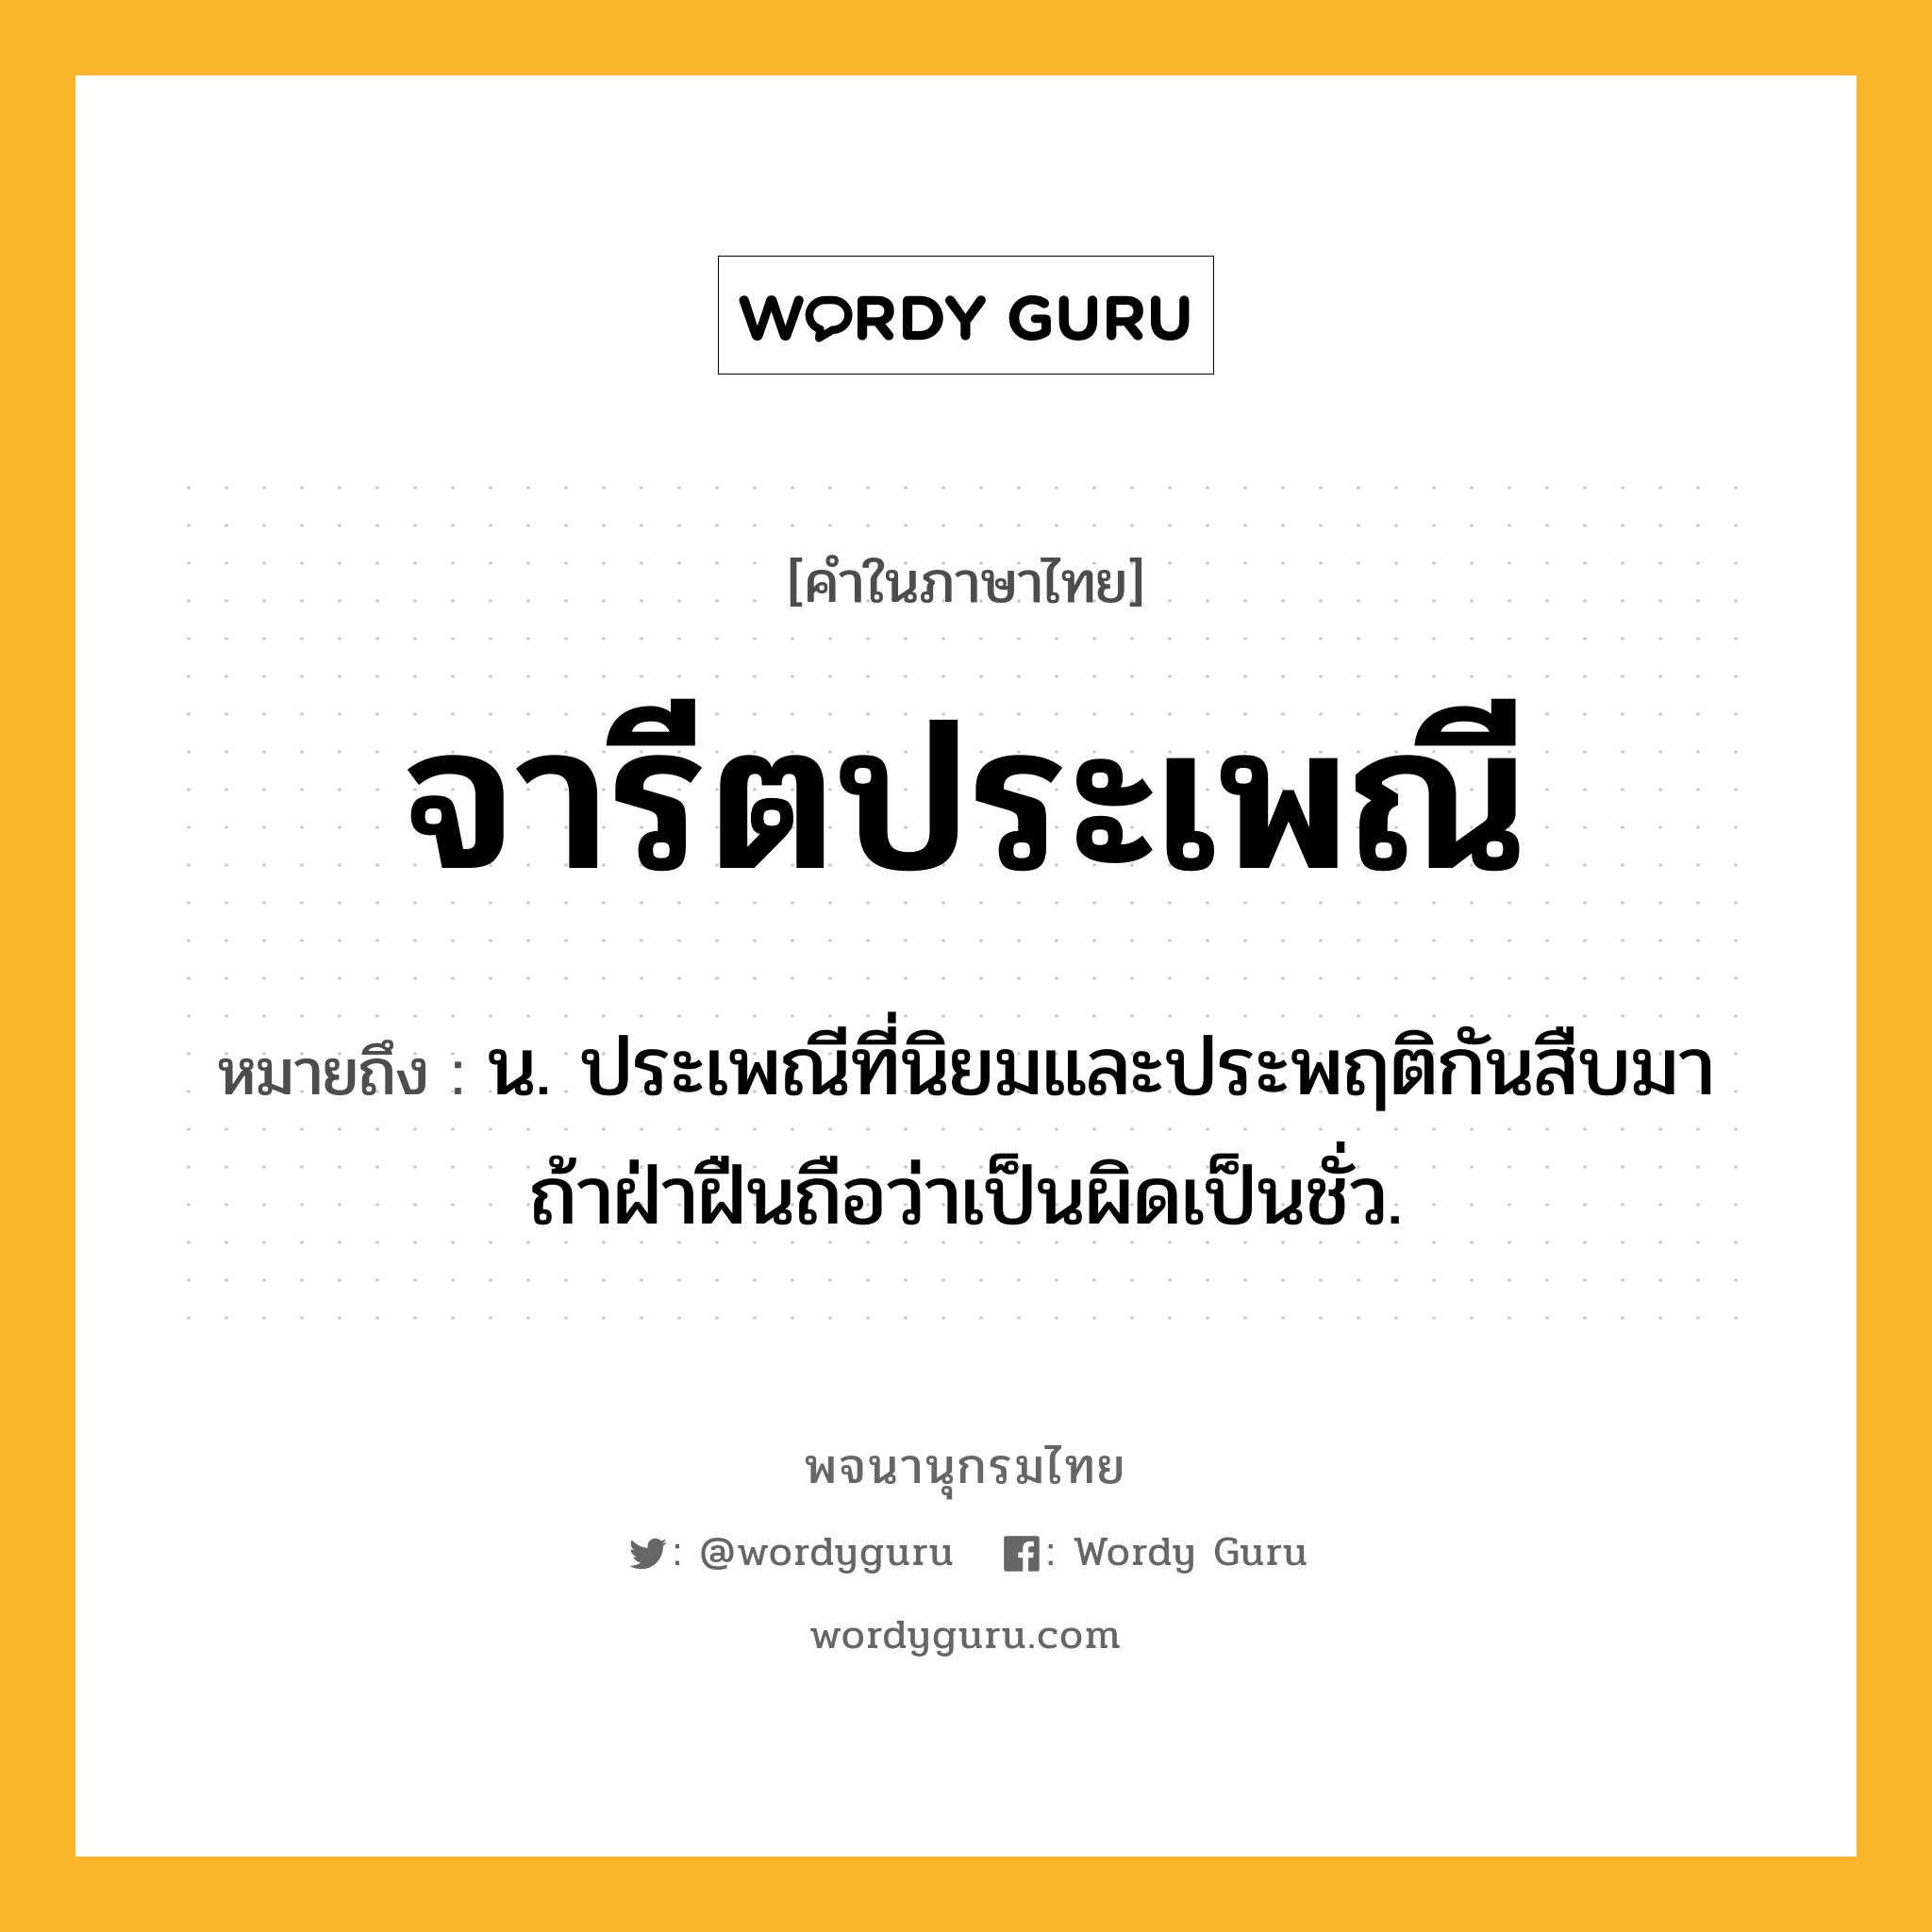 จารีตประเพณี ความหมาย หมายถึงอะไร?, คำในภาษาไทย จารีตประเพณี หมายถึง น. ประเพณีที่นิยมและประพฤติกันสืบมา ถ้าฝ่าฝืนถือว่าเป็นผิดเป็นชั่ว.